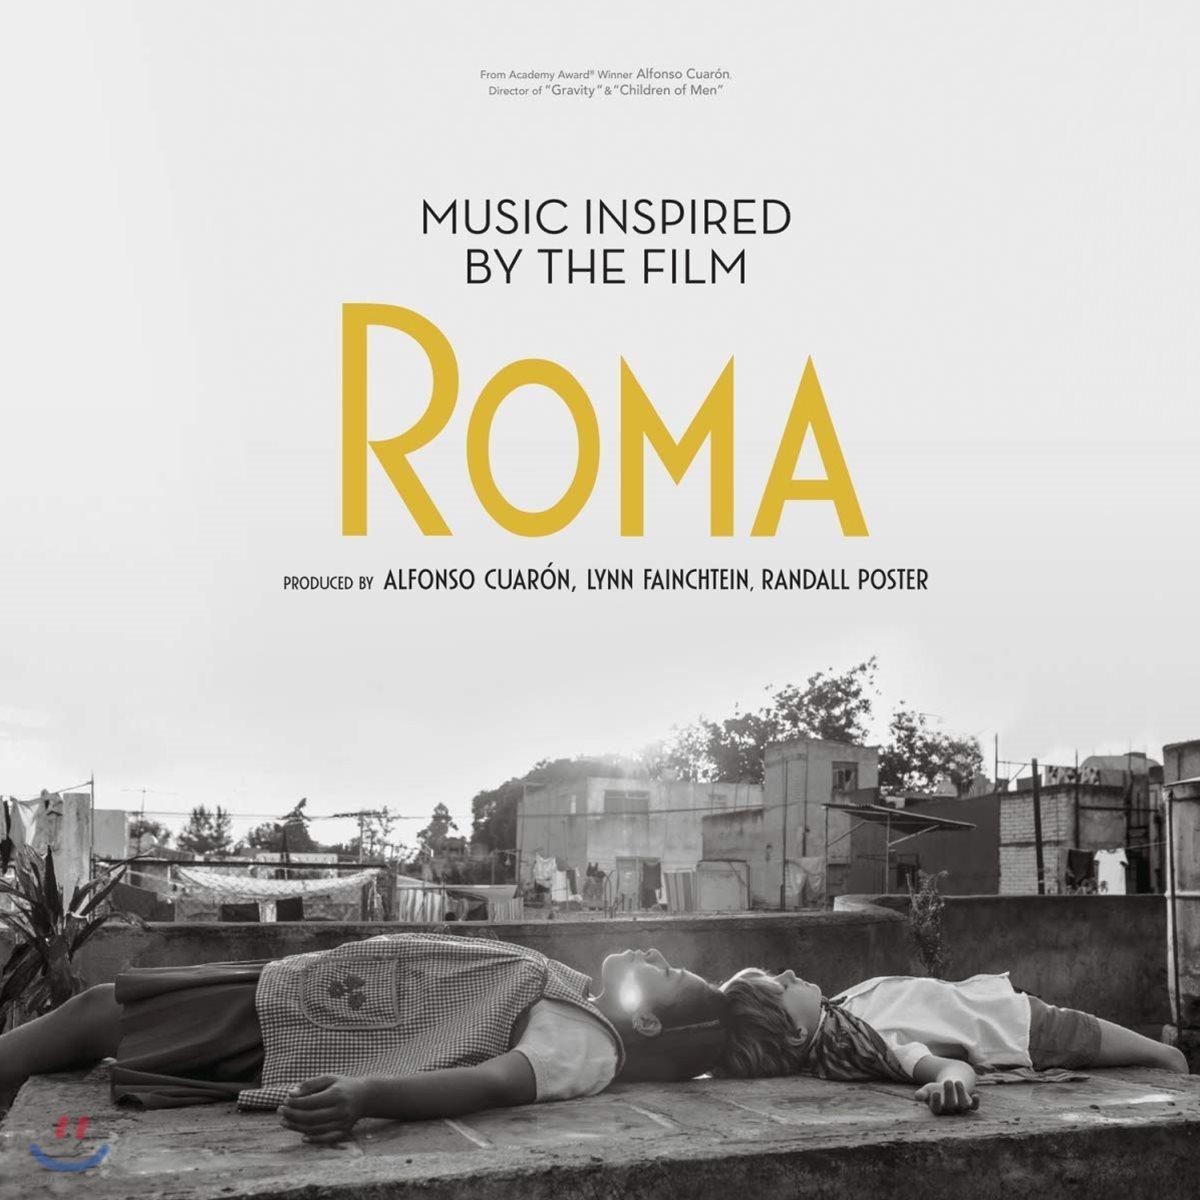 영화 &#39;로마&#39;로부터 영감을 받은 음악들 (Music Inspired by the Film Roma) [2LP]